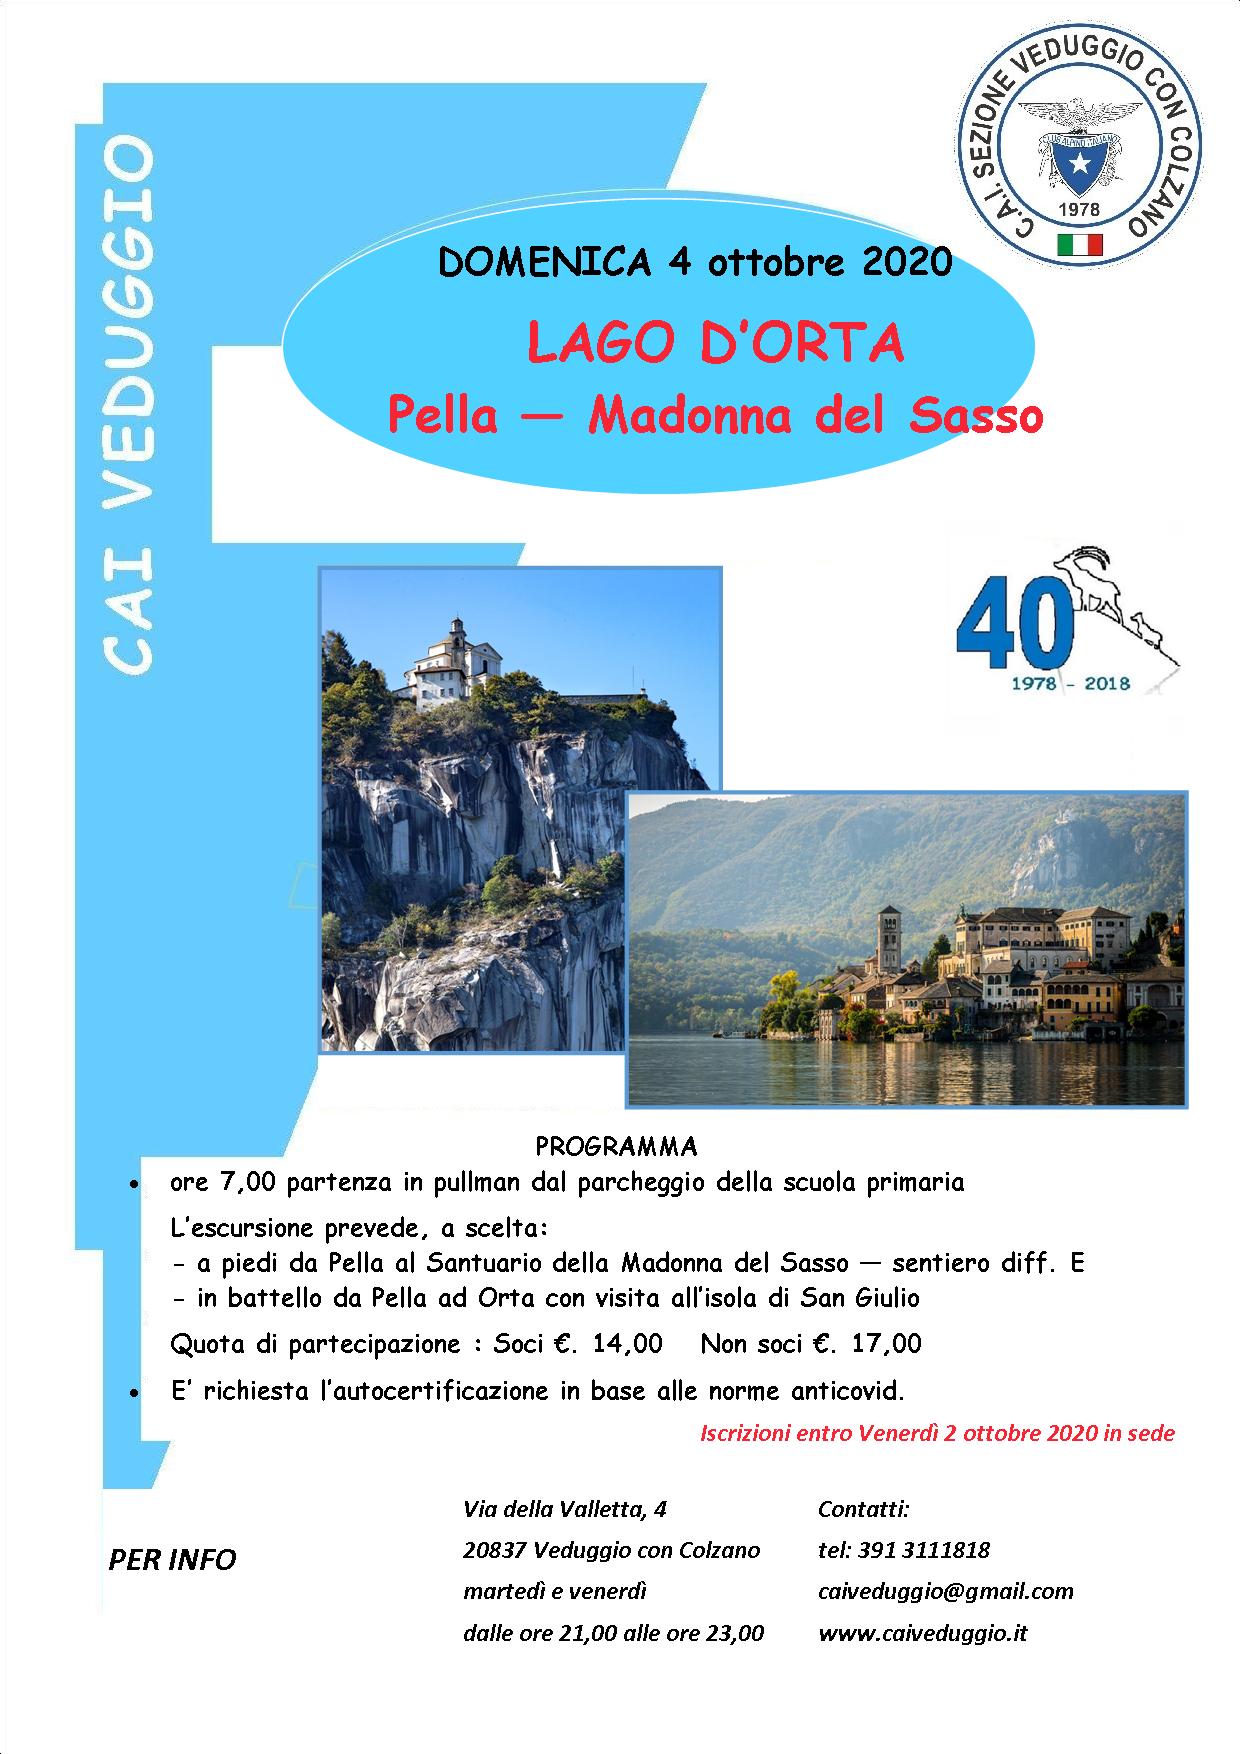 Domenica 4 ottobre 2020 – Lago d’Orta – Pella/Madonna del Sasso